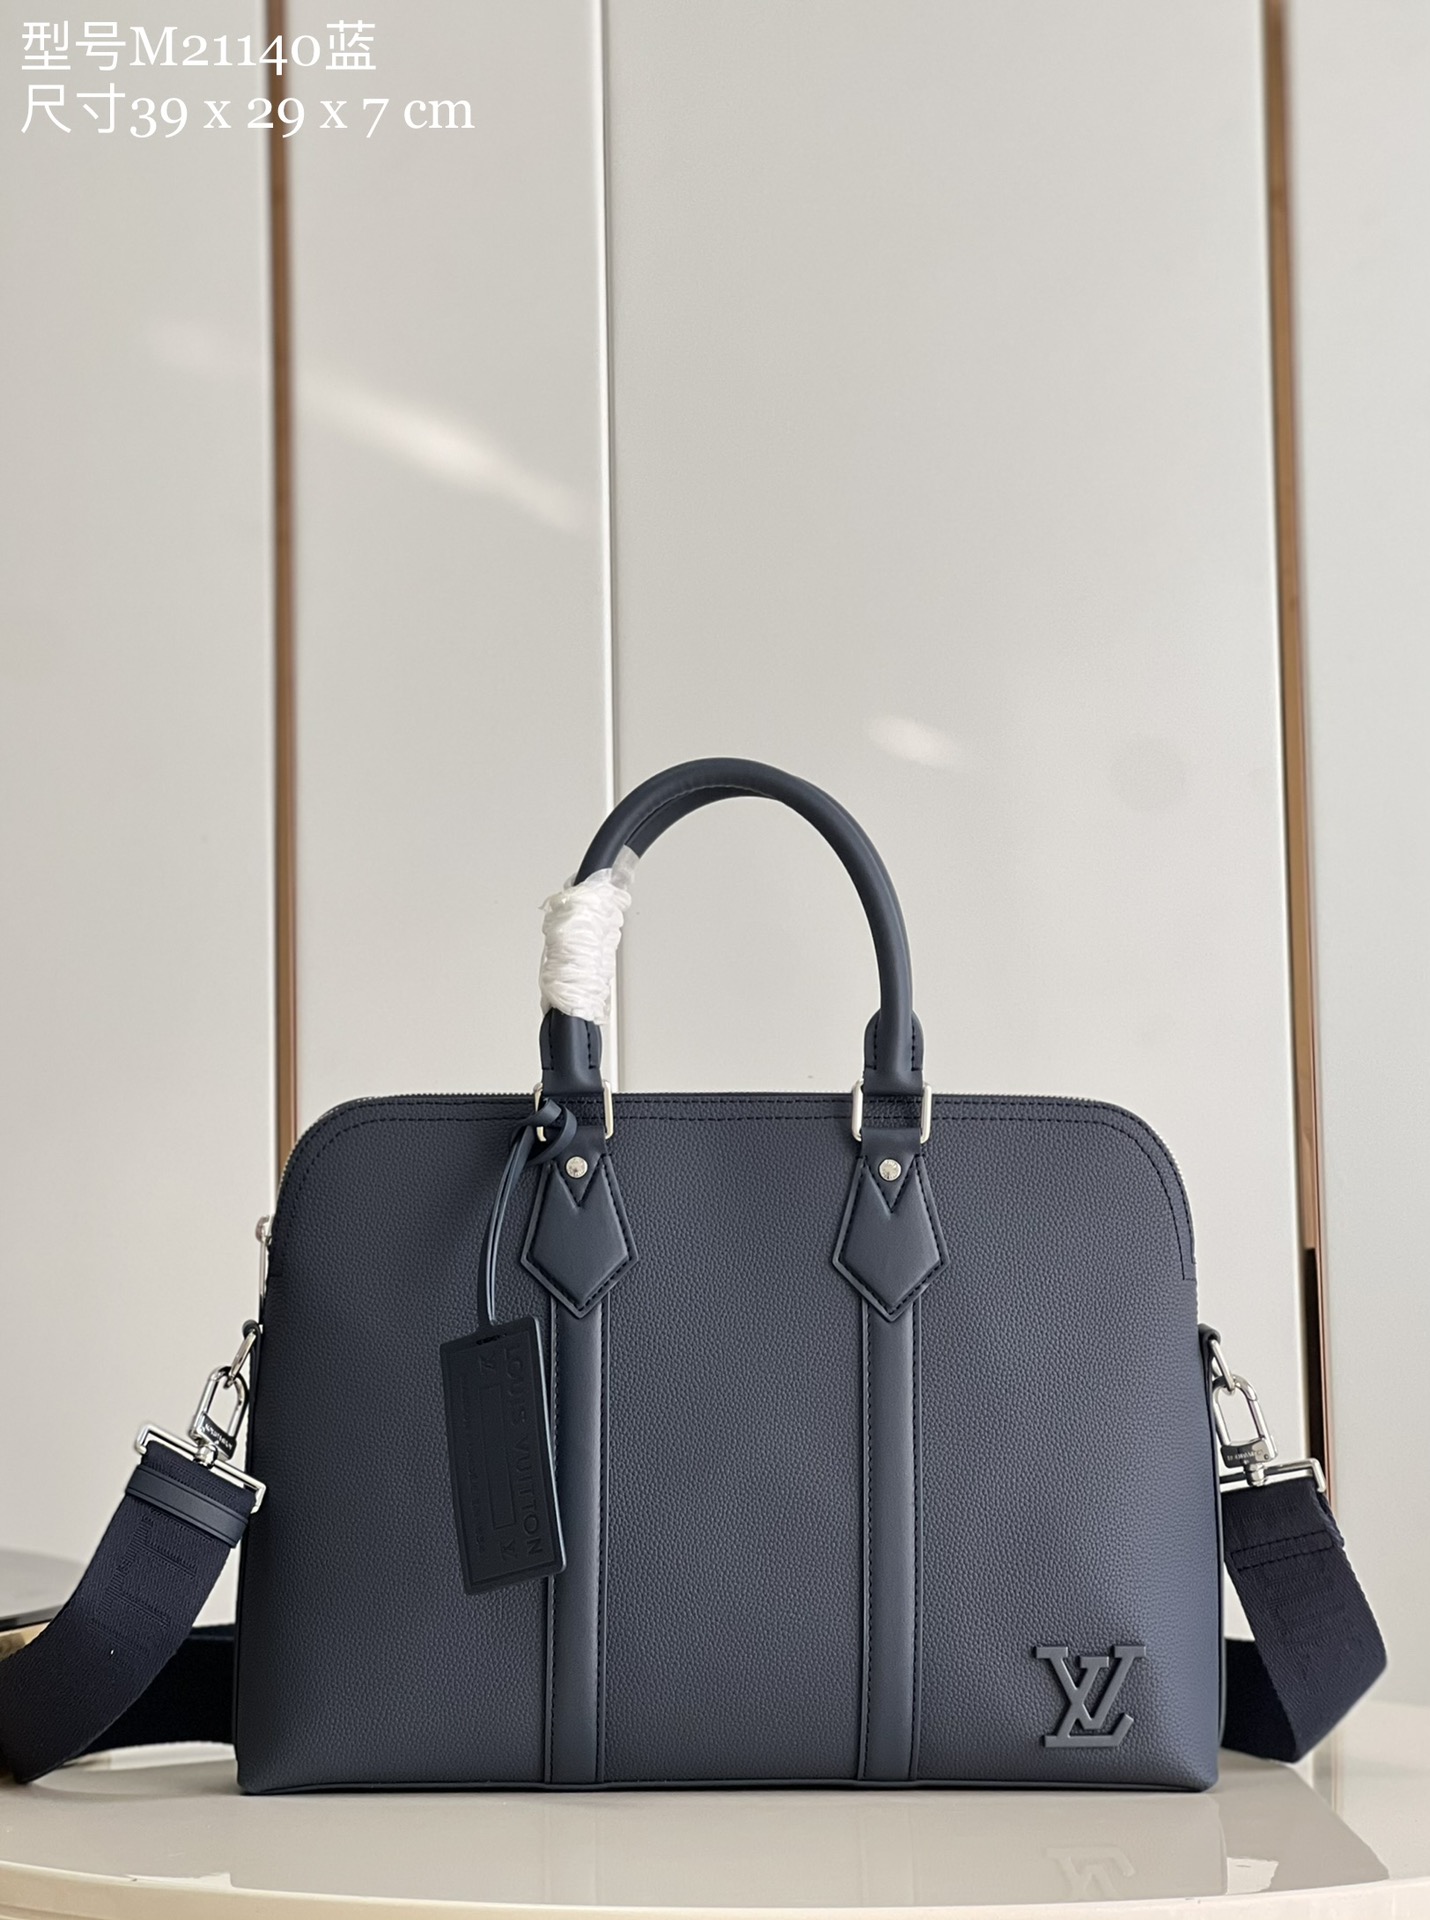 Louis Vuitton Bags Briefcase Blue M21140